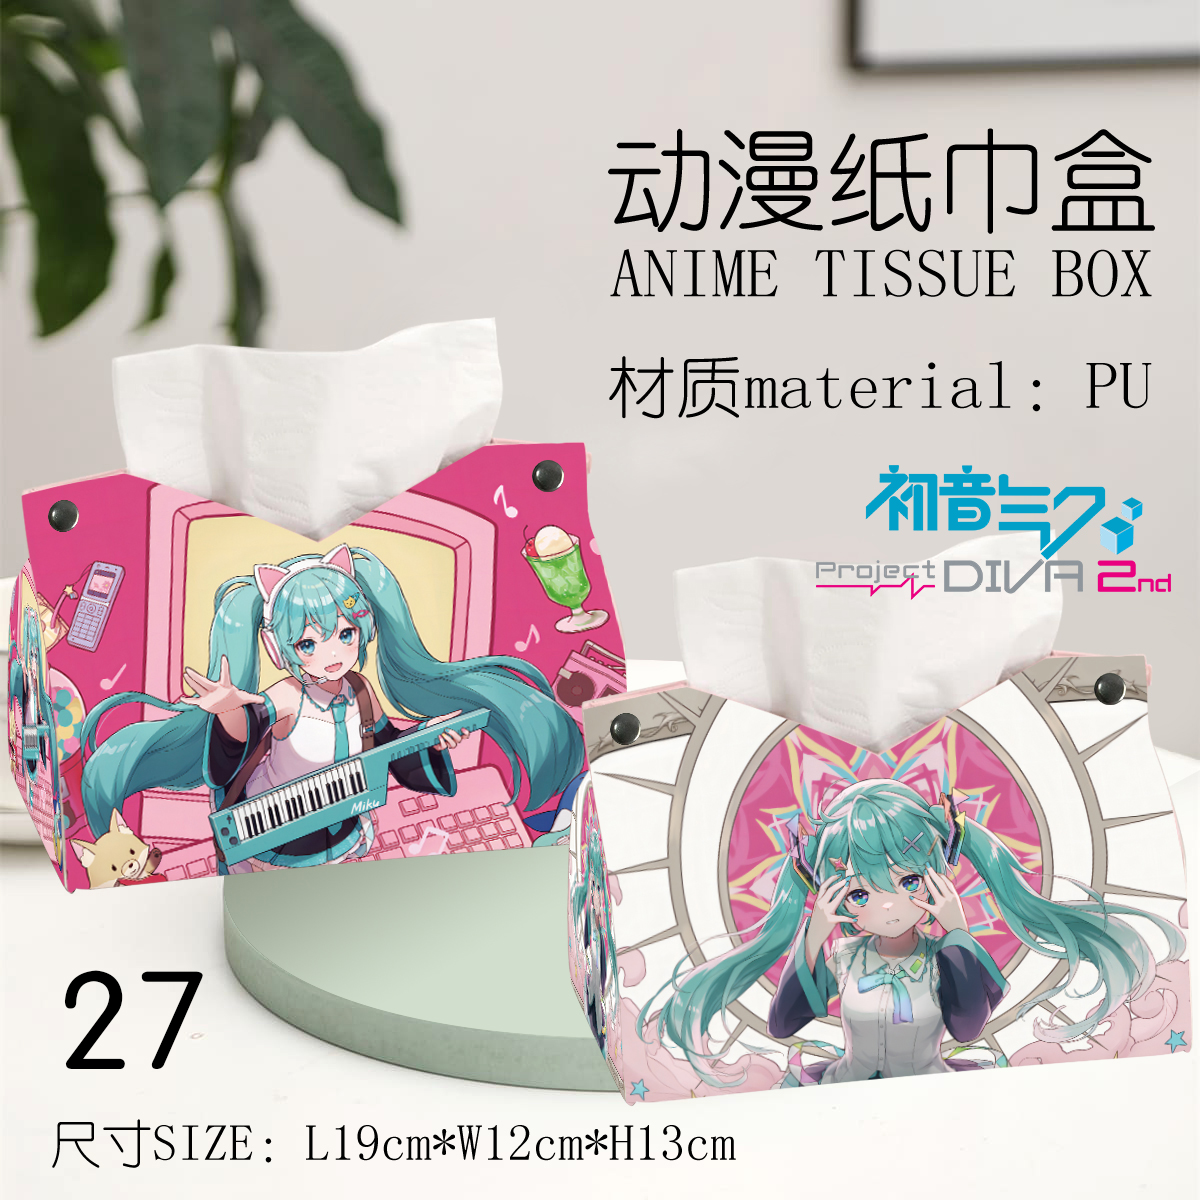 Hatsune Miku anime Tissue box